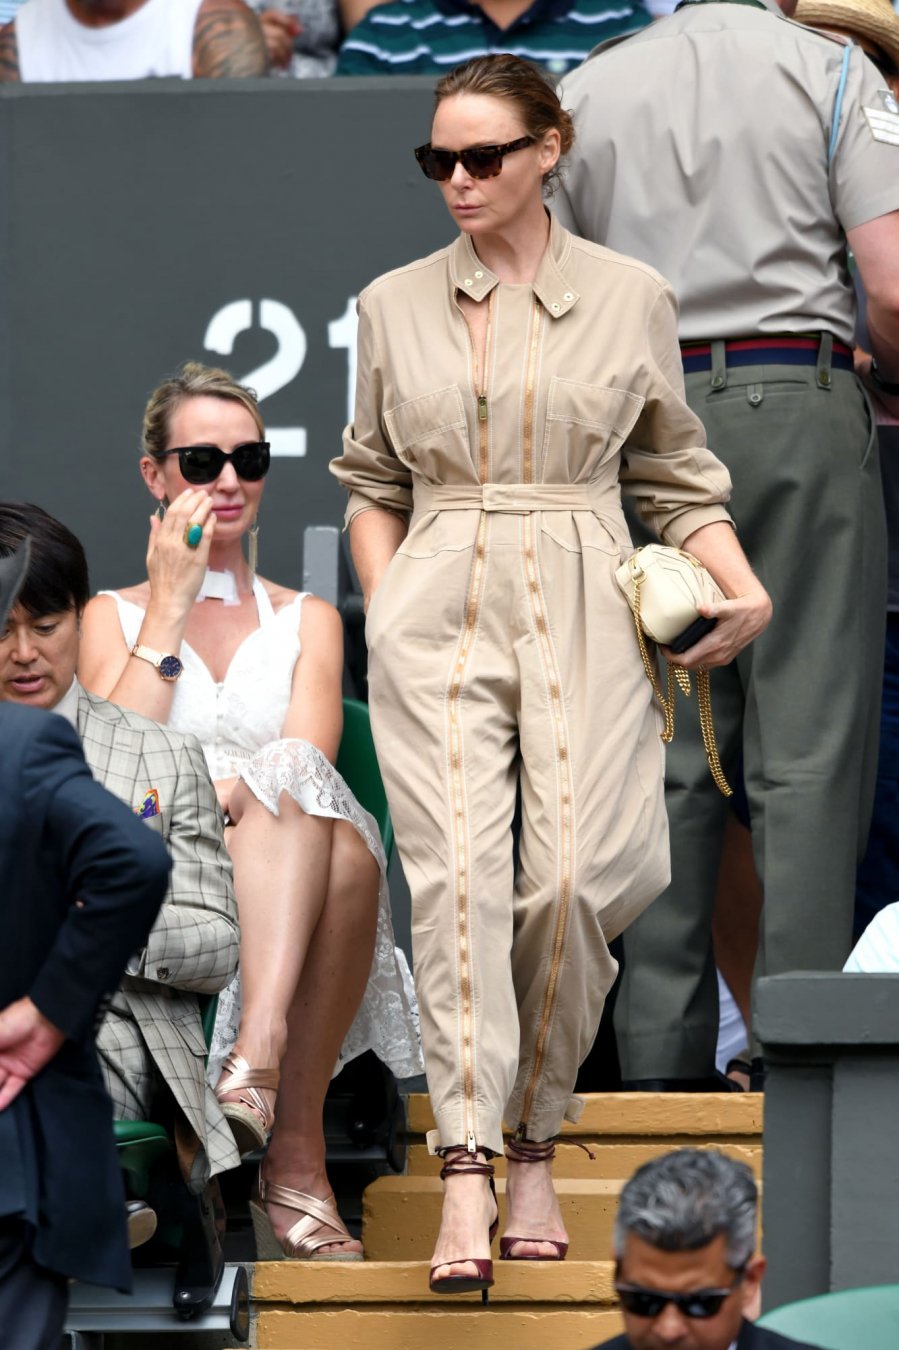 Nhà thiết kế Stella McCartney “chất lừ” trong bộ jumpsuit cá tính do chính bà thiết kế.    